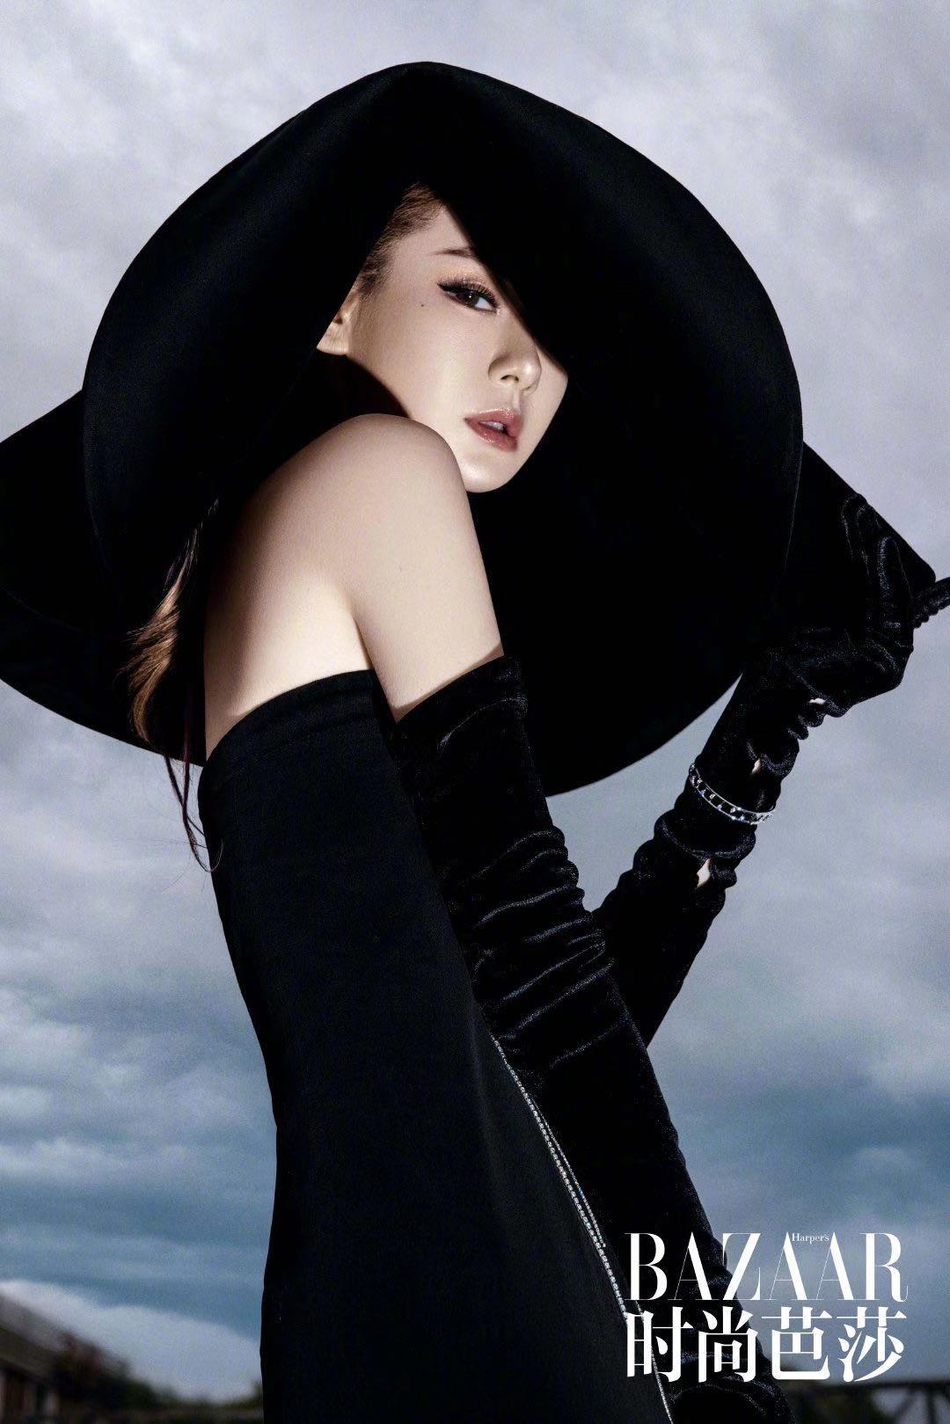 戚薇登《时尚芭莎》封面 黑色高开叉长裙迷人又暗黑